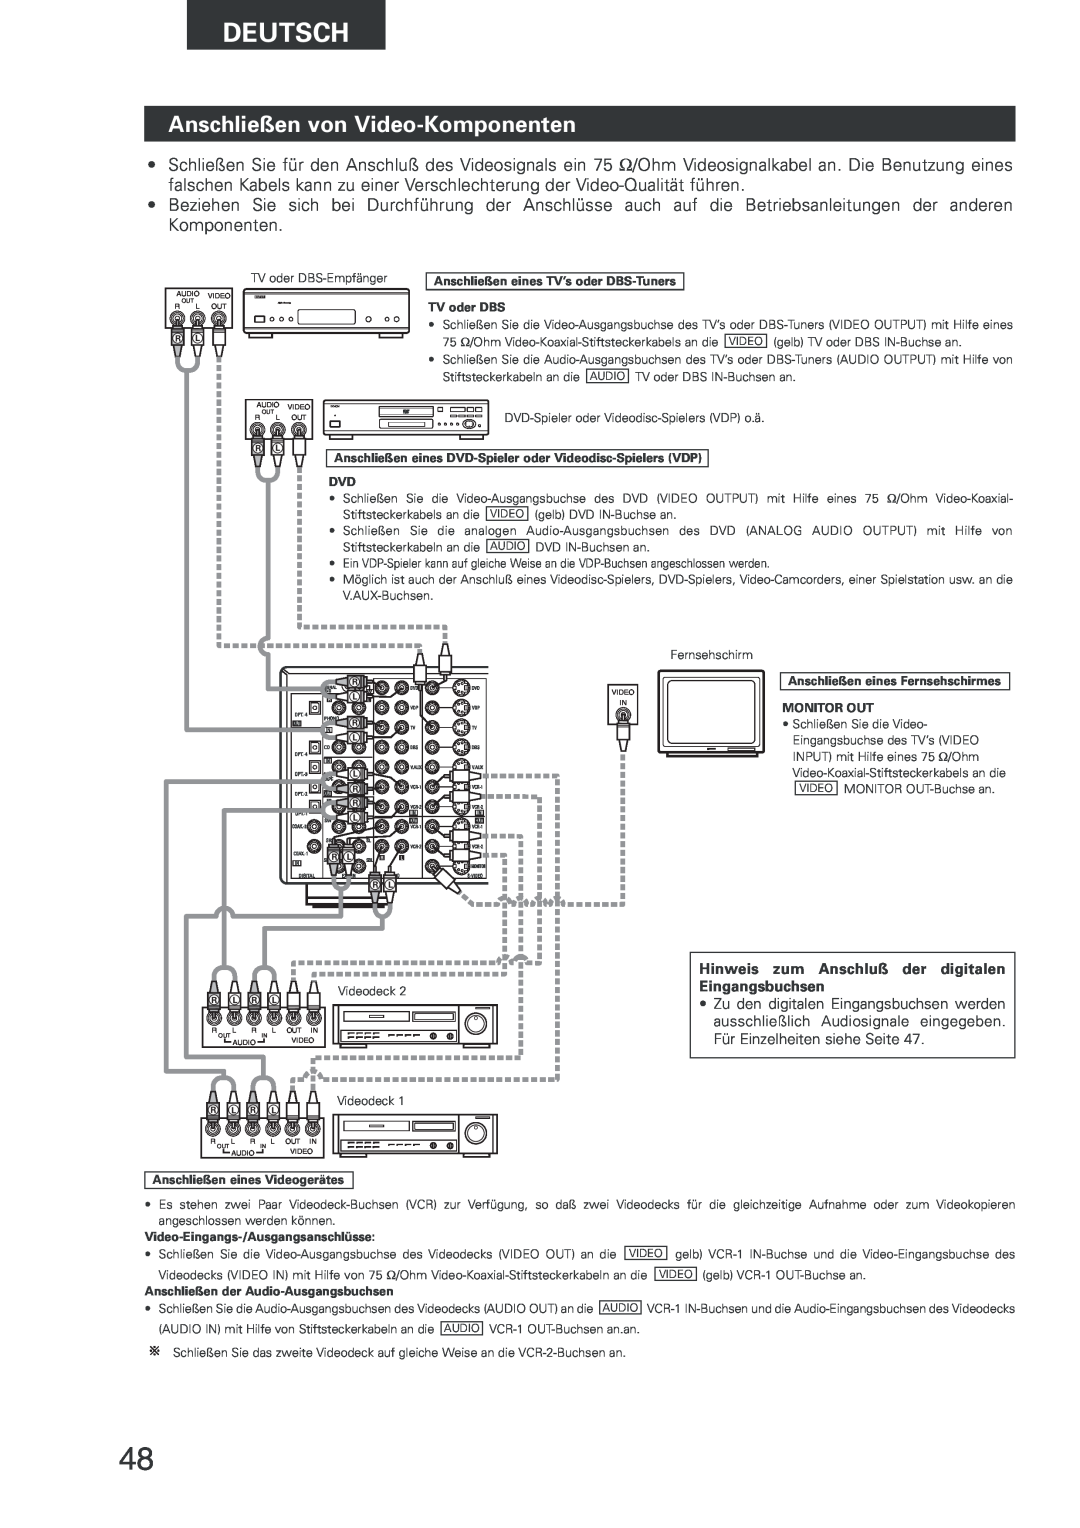 Denon AVR-2803 manual Anschließen von Video-Komponenten, Deutsch, Hinweis zum Anschluß der digitalen Eingangsbuchsen 